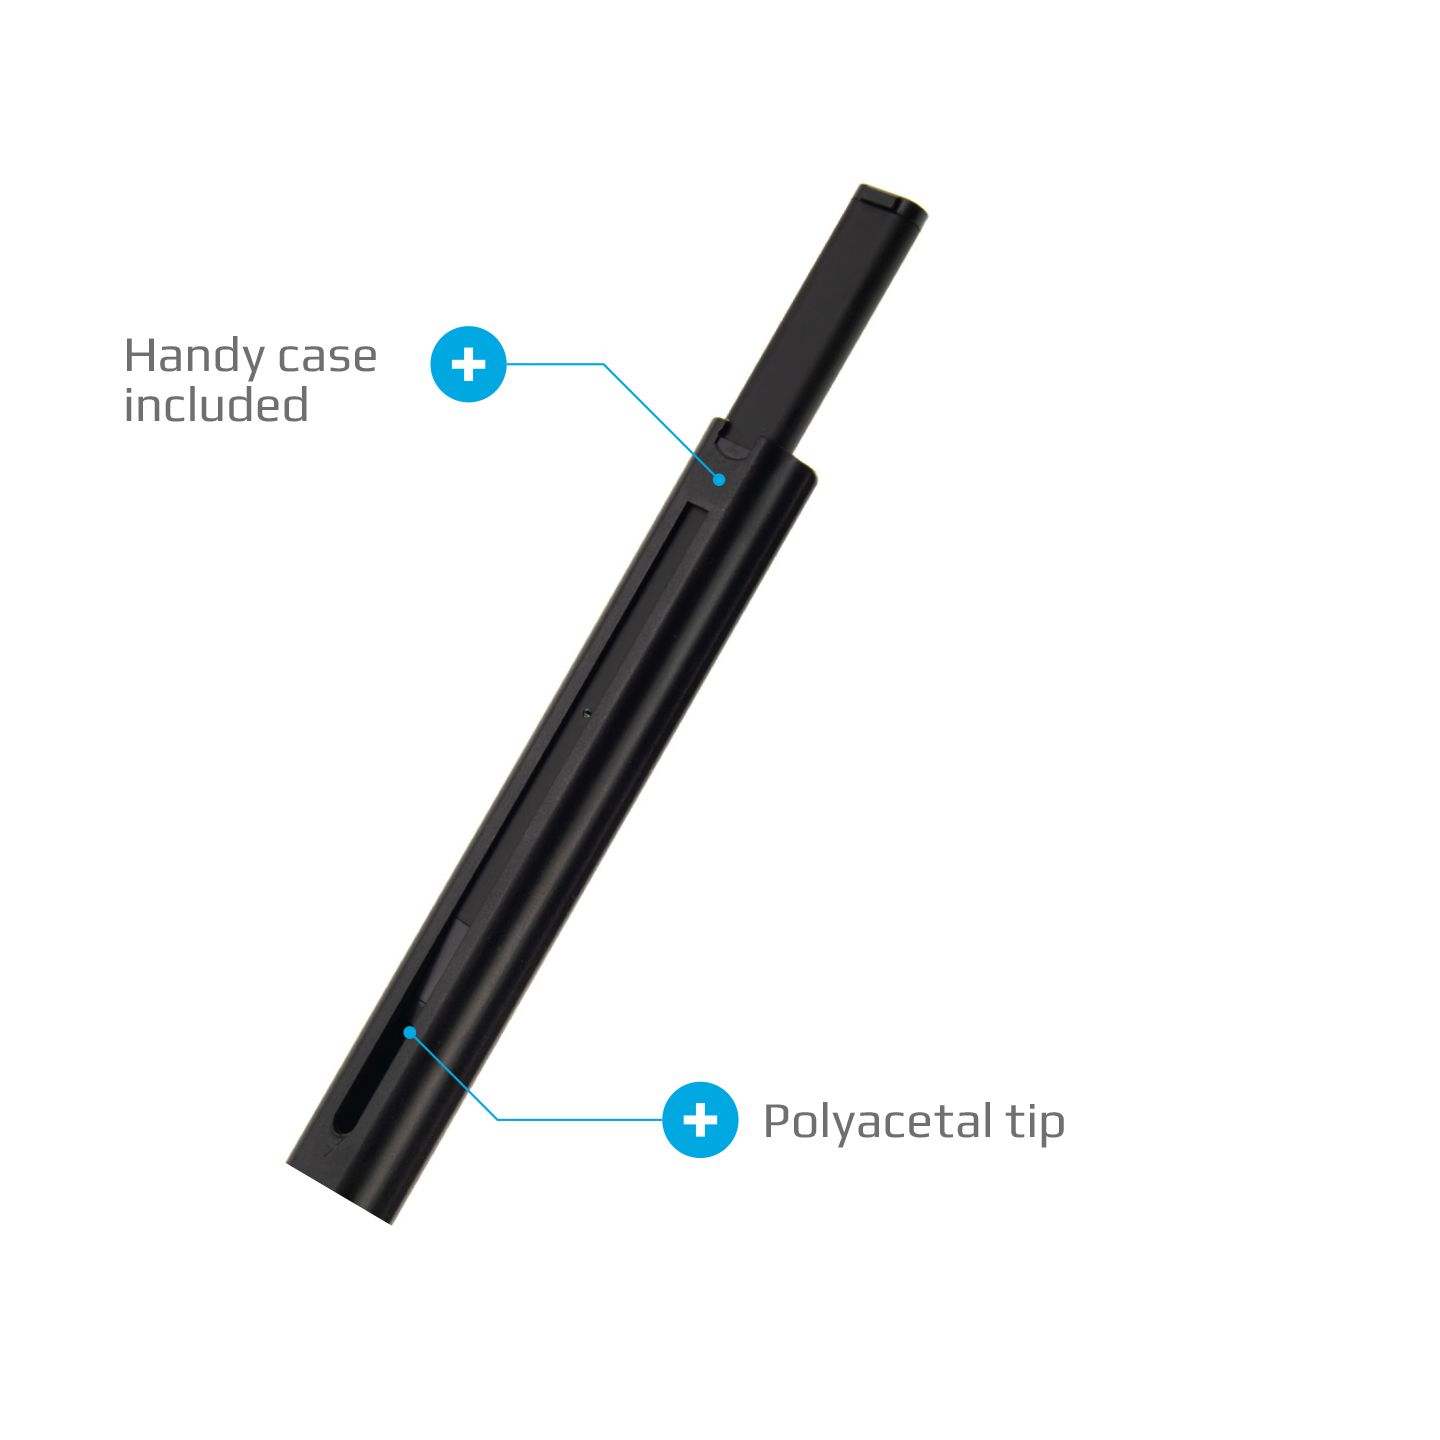 FIXED Pin Aktivní stylus pro dotykové displeje s pouzdrem, černý